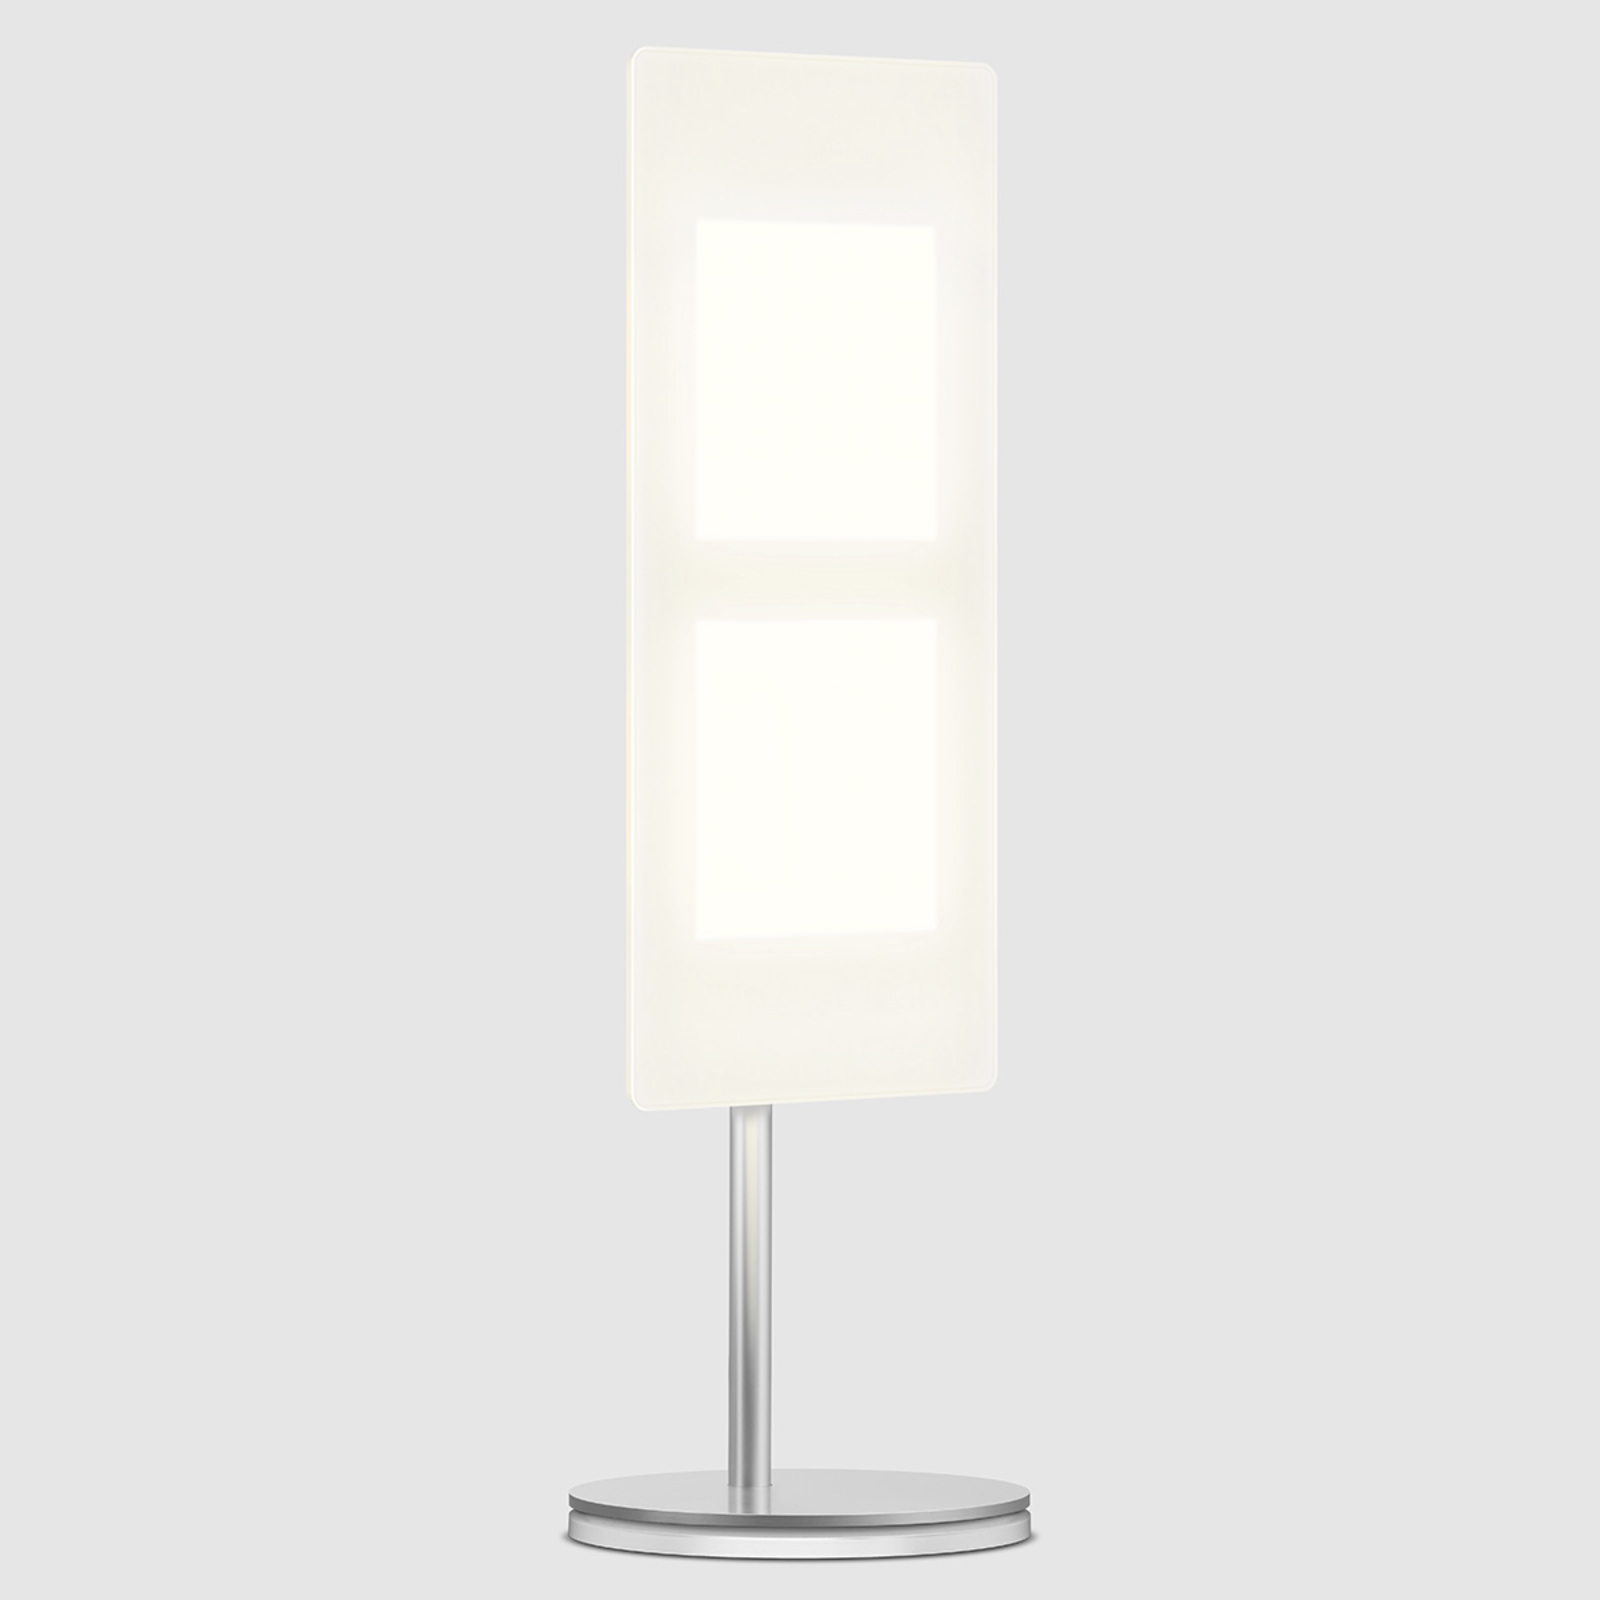 47,8 cm høy OLED-bordlampe OMLED One t2, hvit